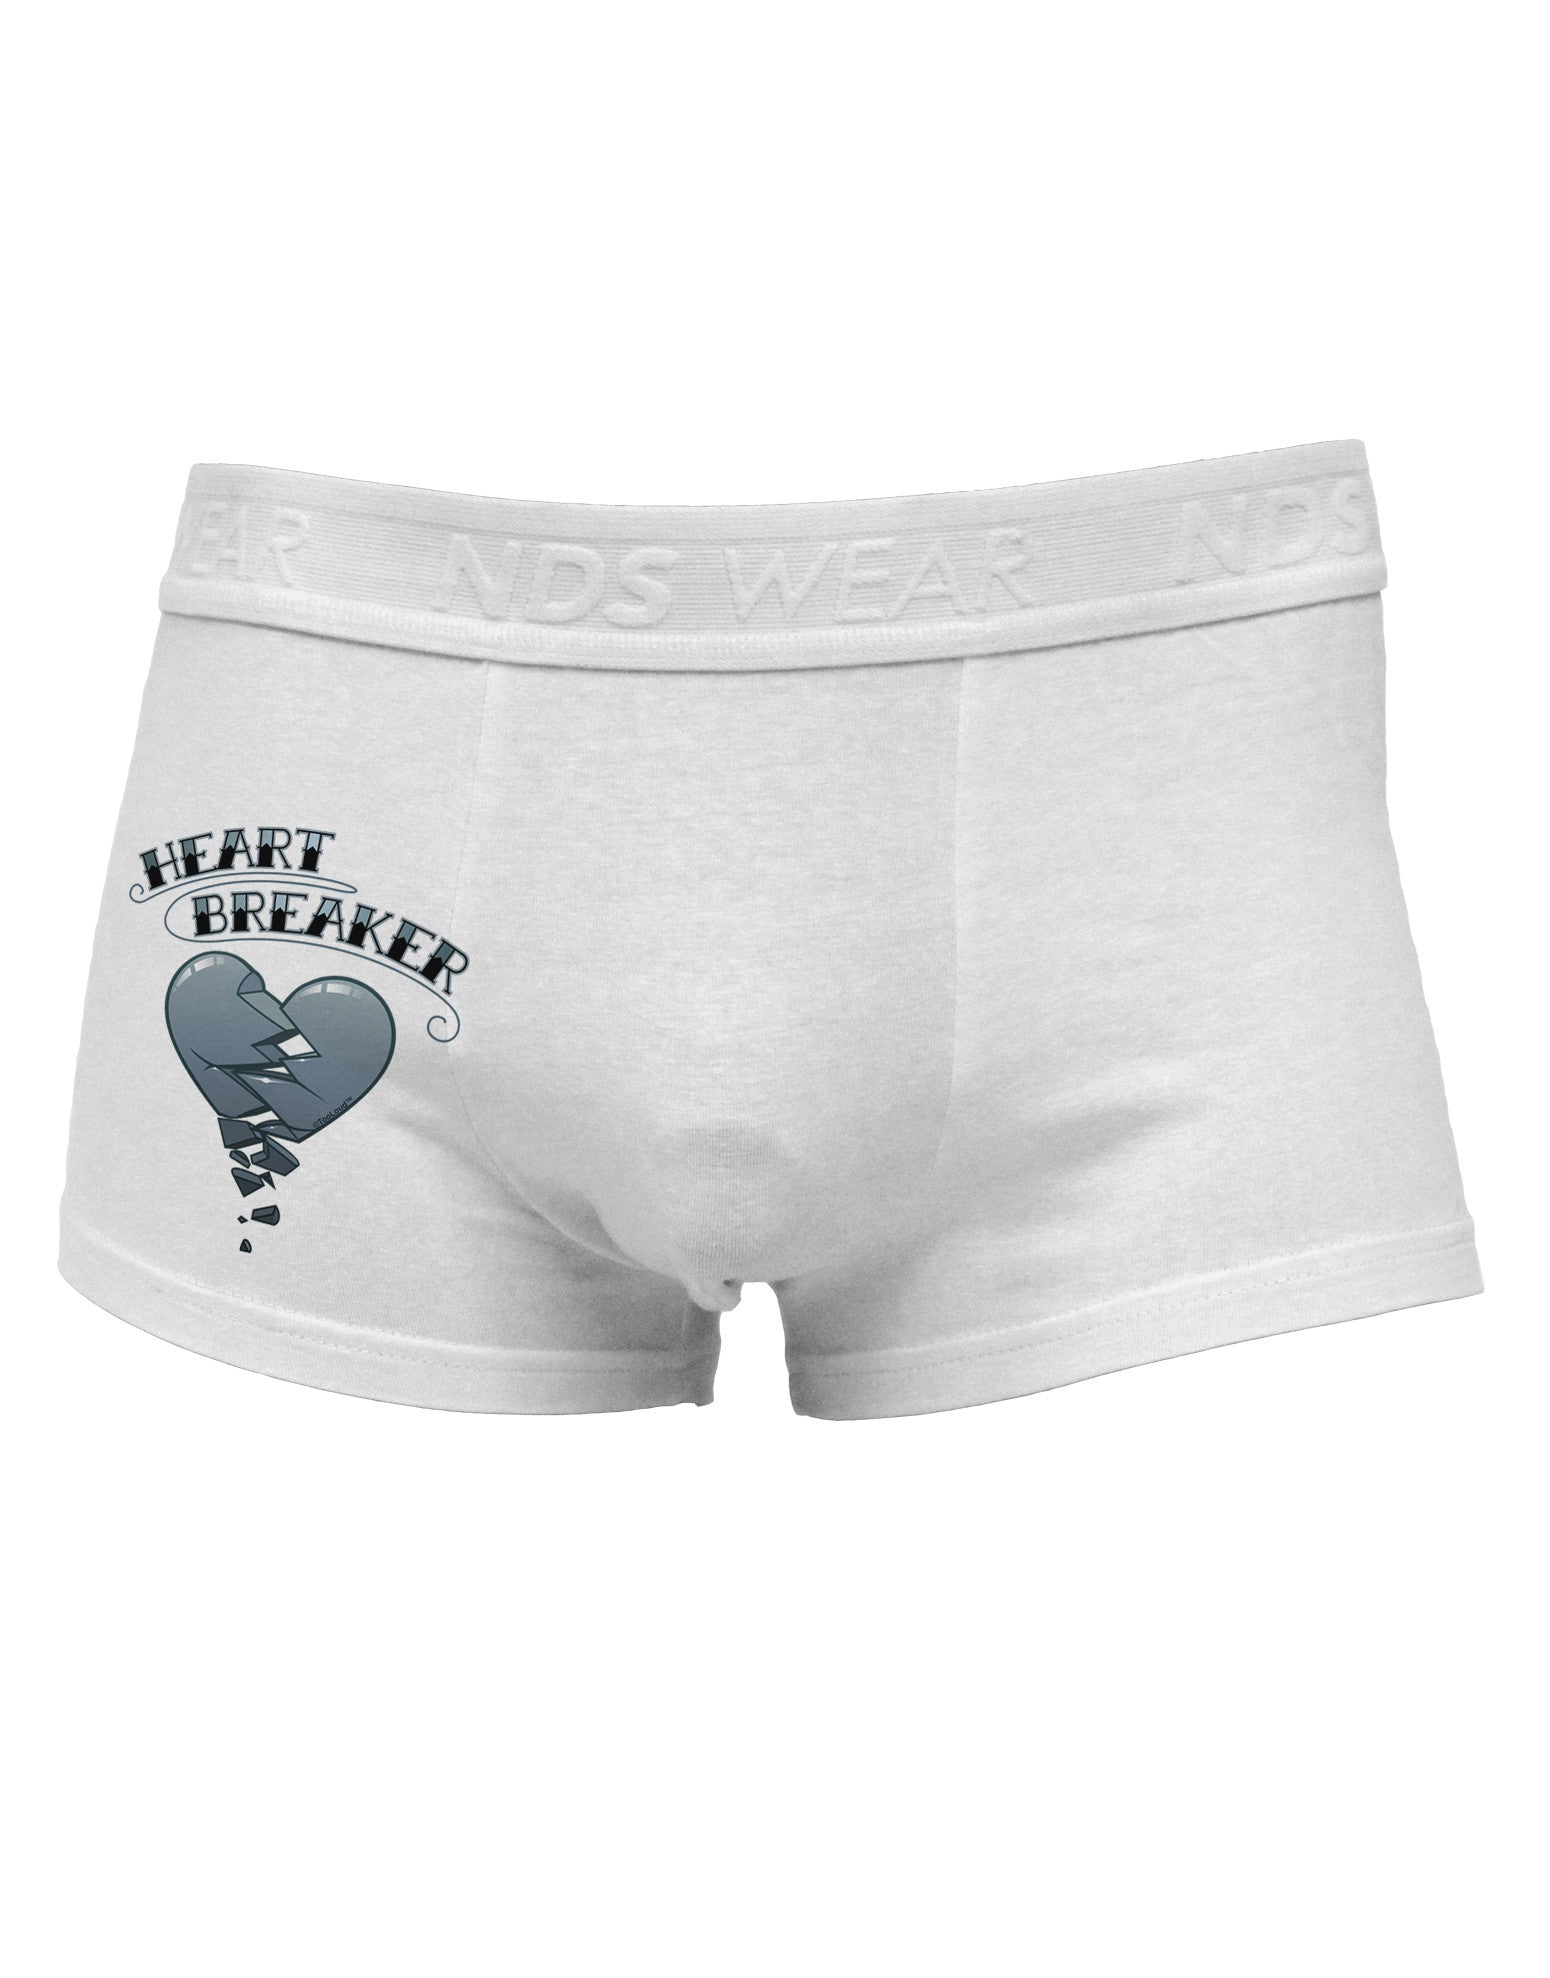 Heart Breaker Manly Side Printed Mens Trunk Underwear by NDS Wear - Davson  Sales